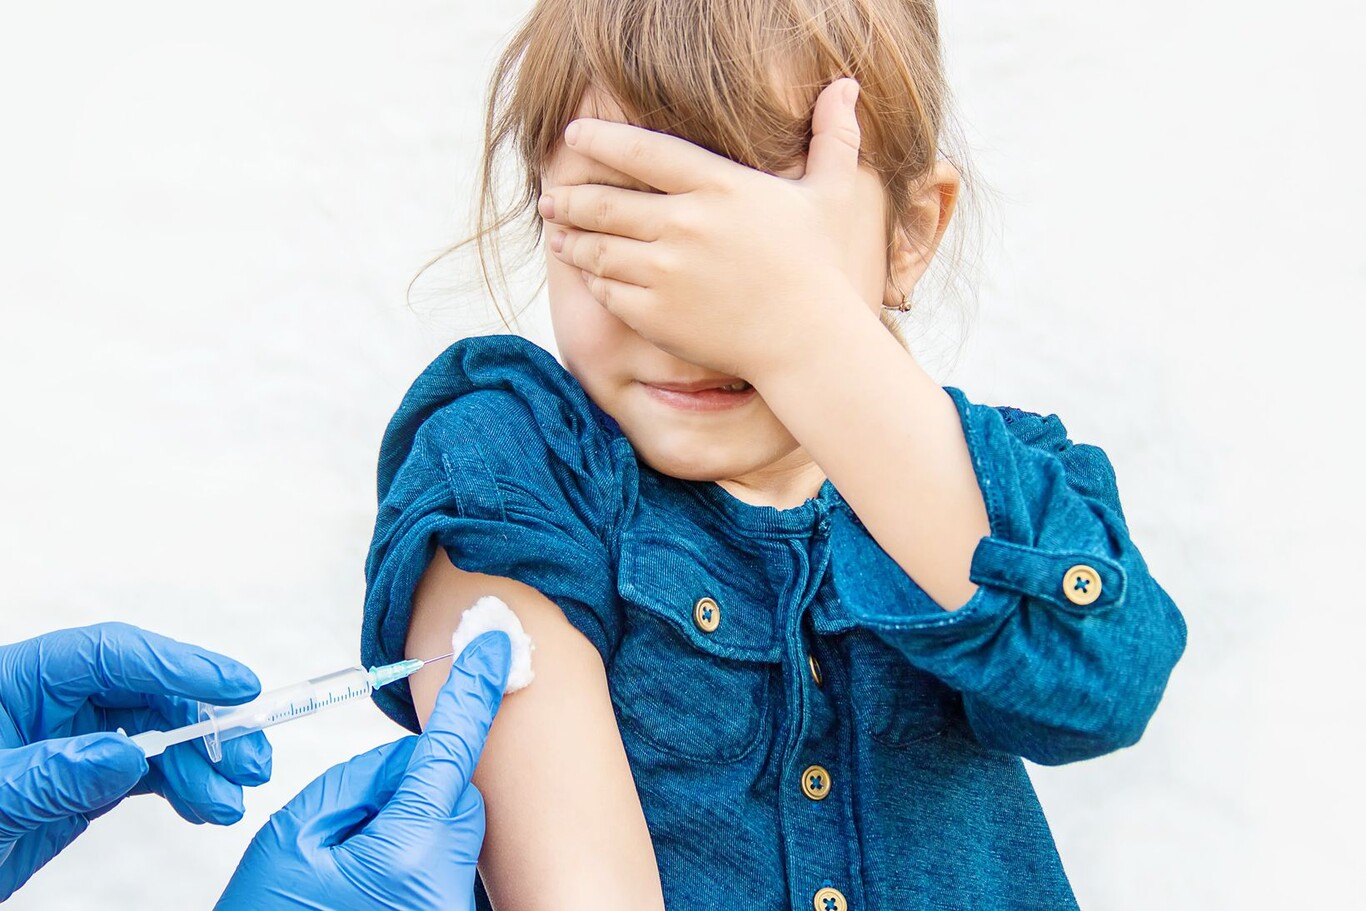 Vacunar o no a los niños contra el Covid-19, una dura decisión de los padres 